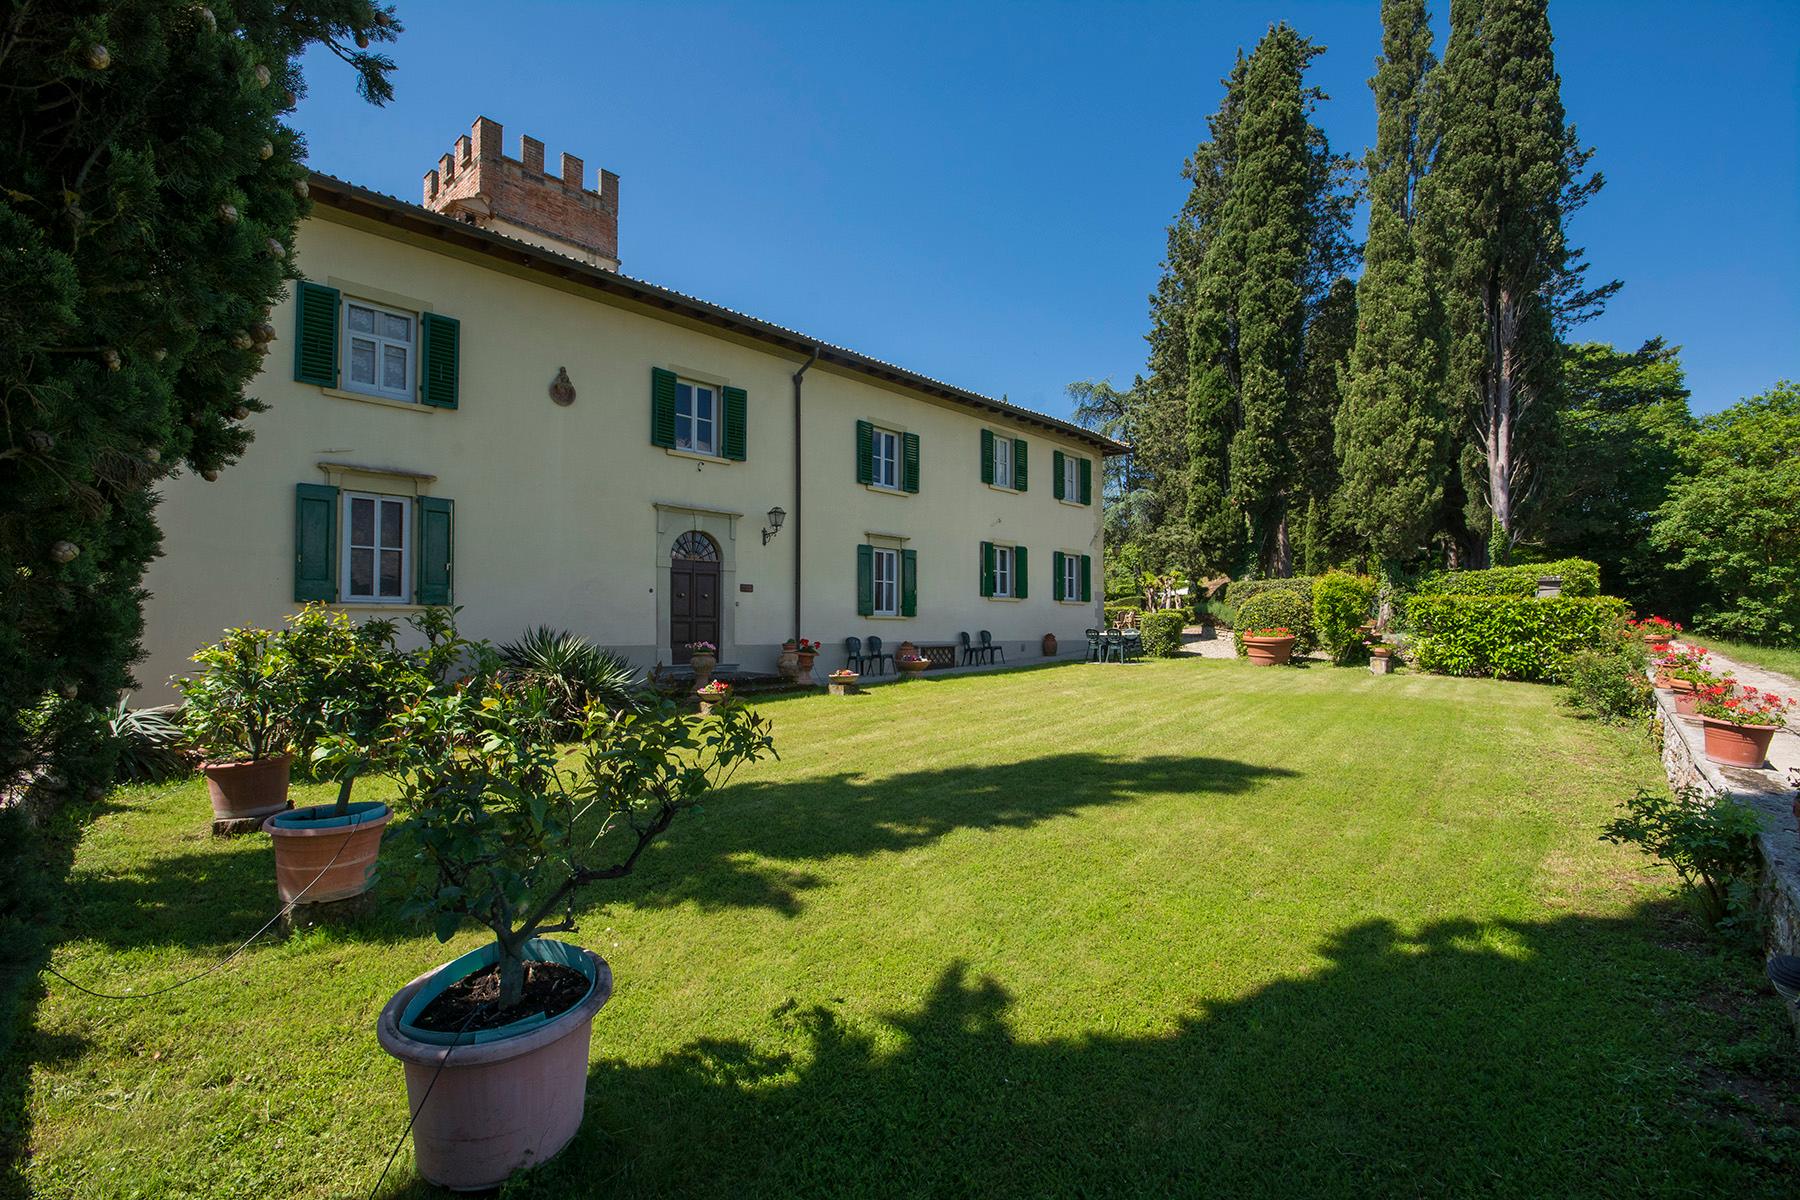 Fascinating villa in the Val di Sieve area - 1